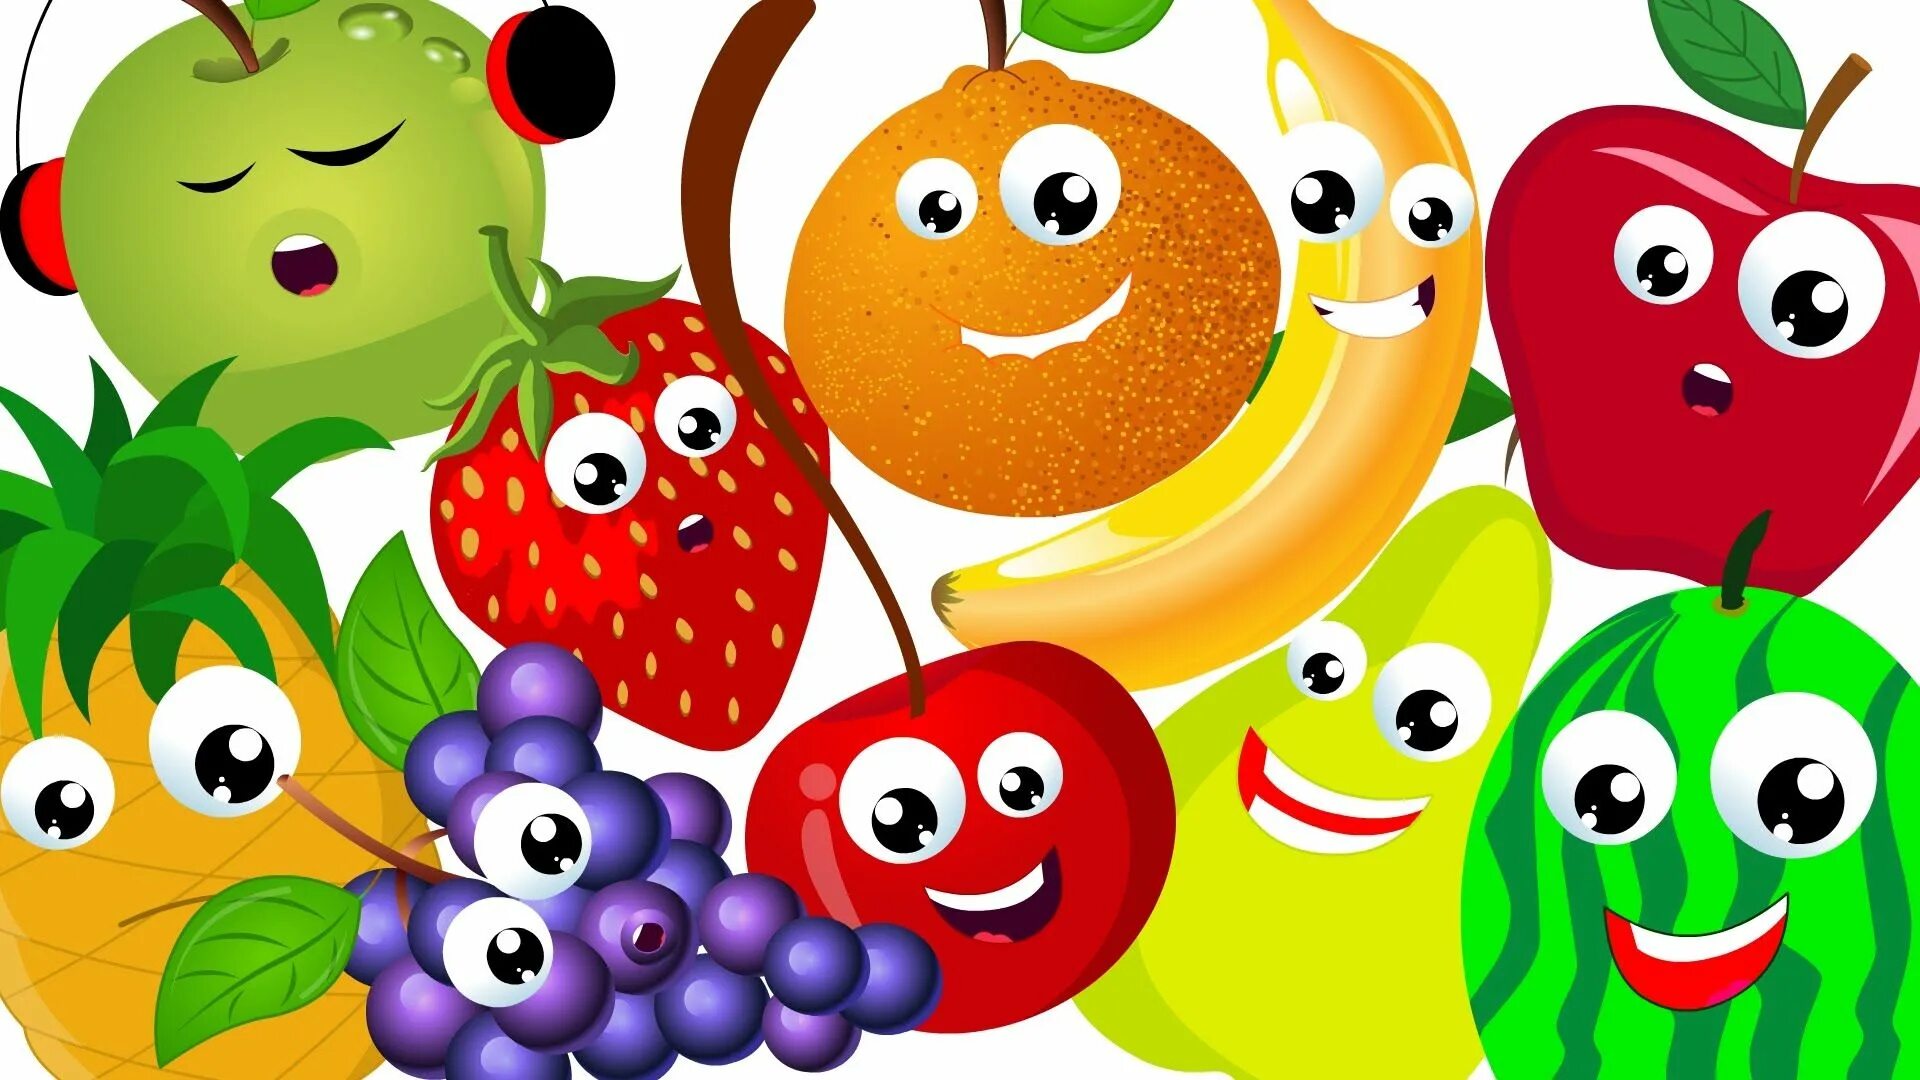 Фрукты for Kids. Картины фруктов для детей. Картина фрукты для детей. Фрукты cartoon. Learning vegetables